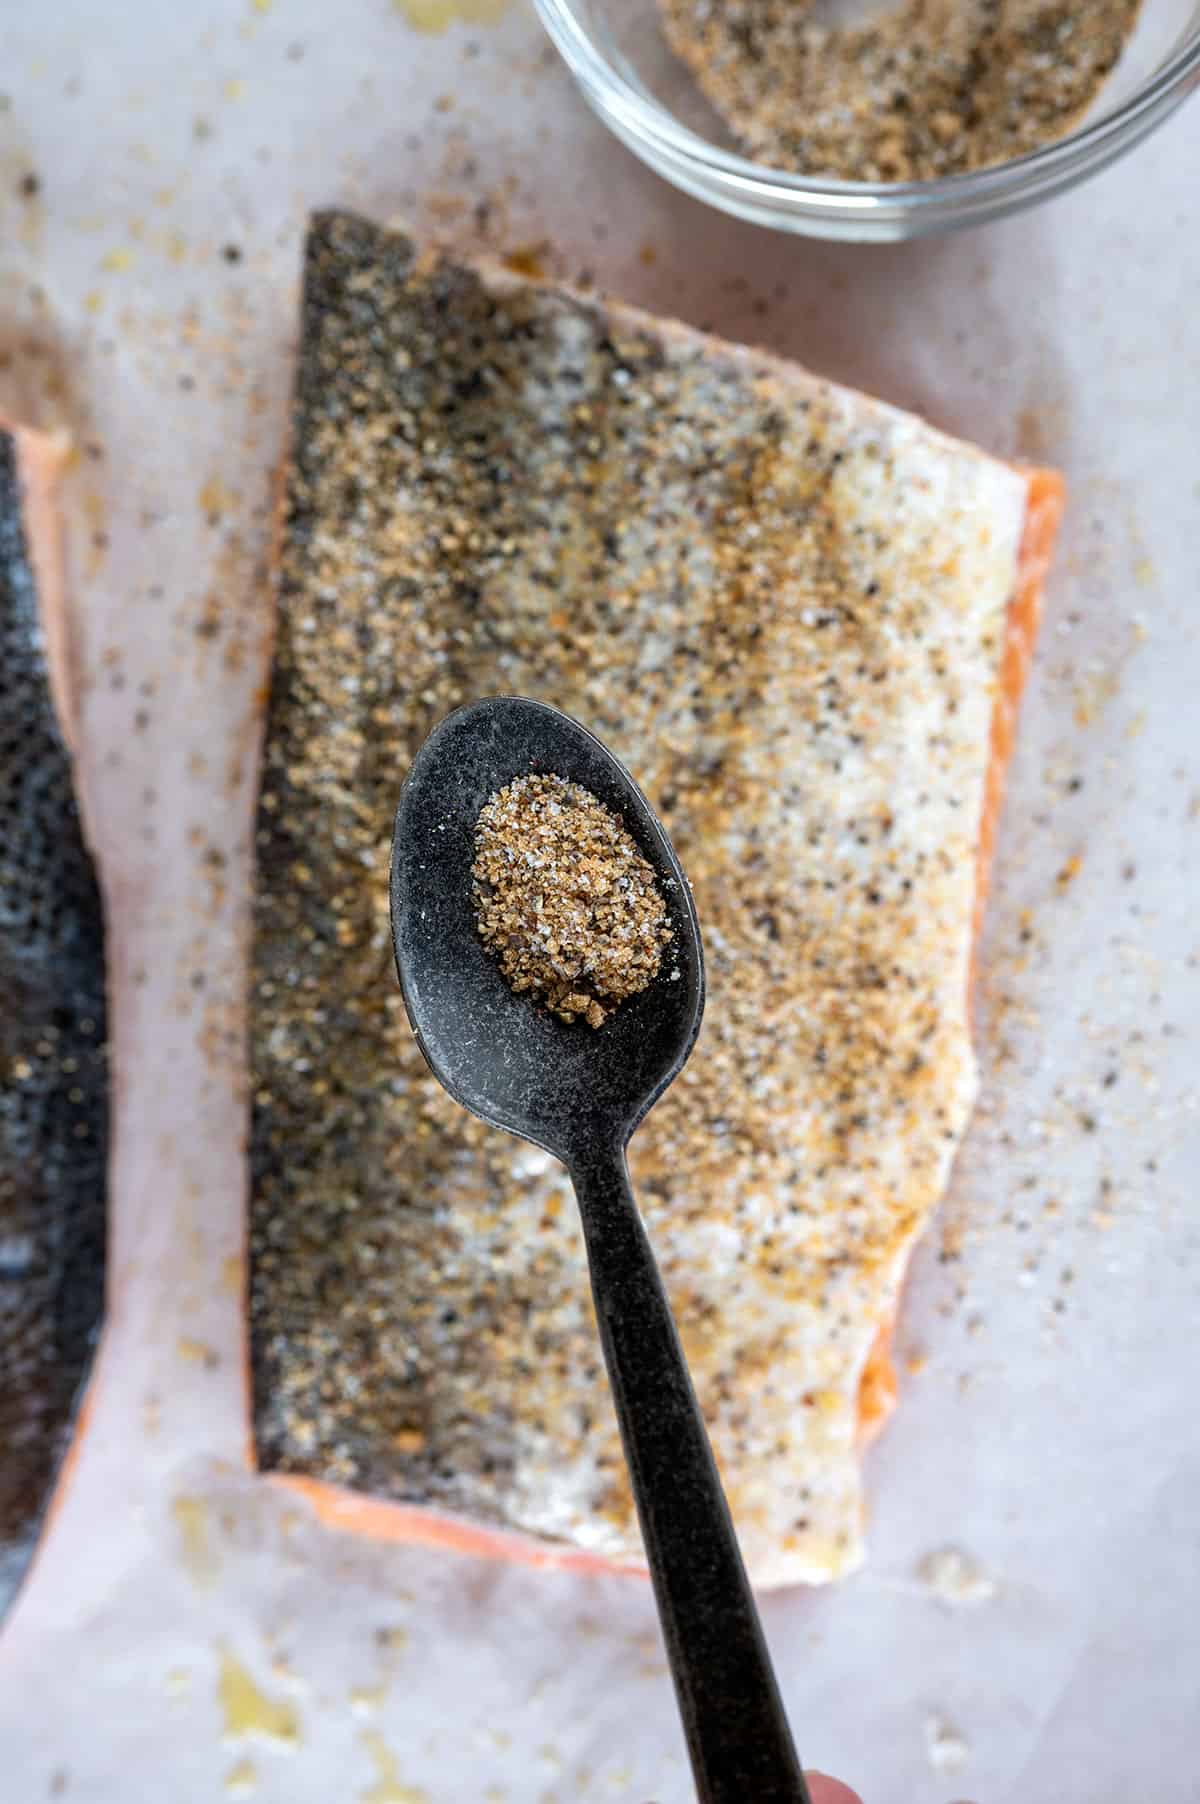 seasoning sprinkled on skin side of salmon.